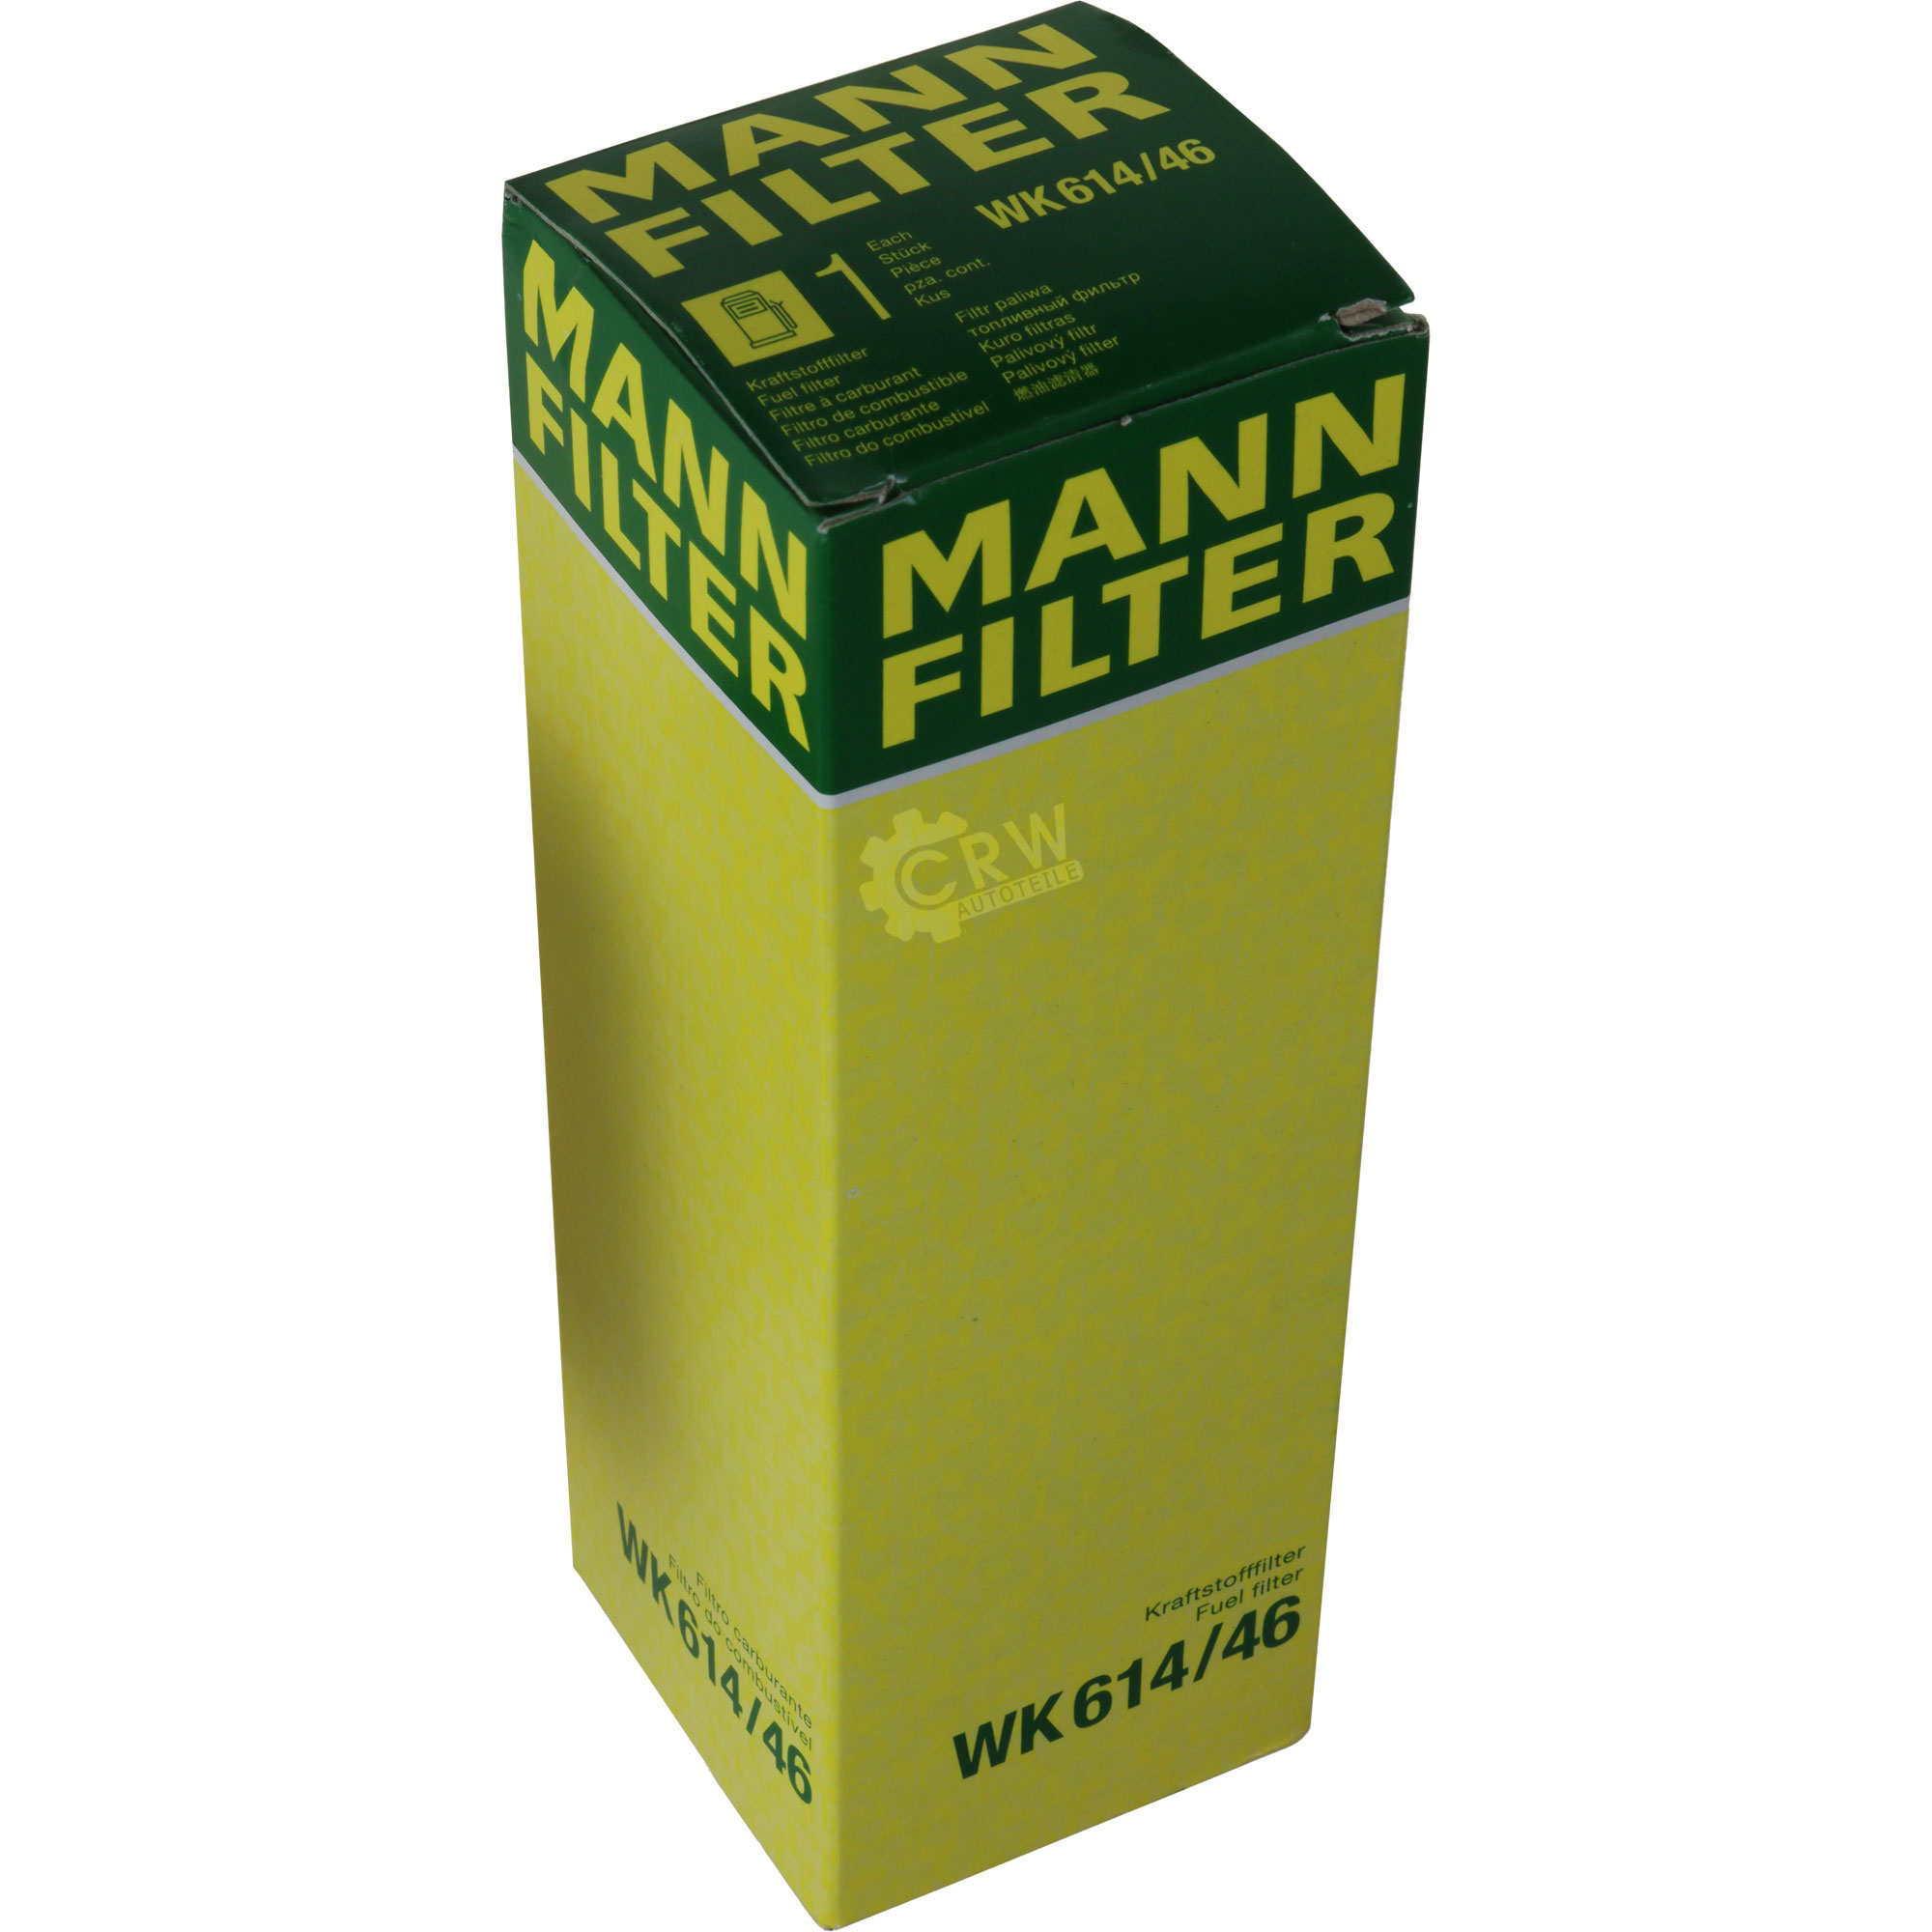 MANN-FILTER Kraftstofffilter WK 614/46 Fuel Filter